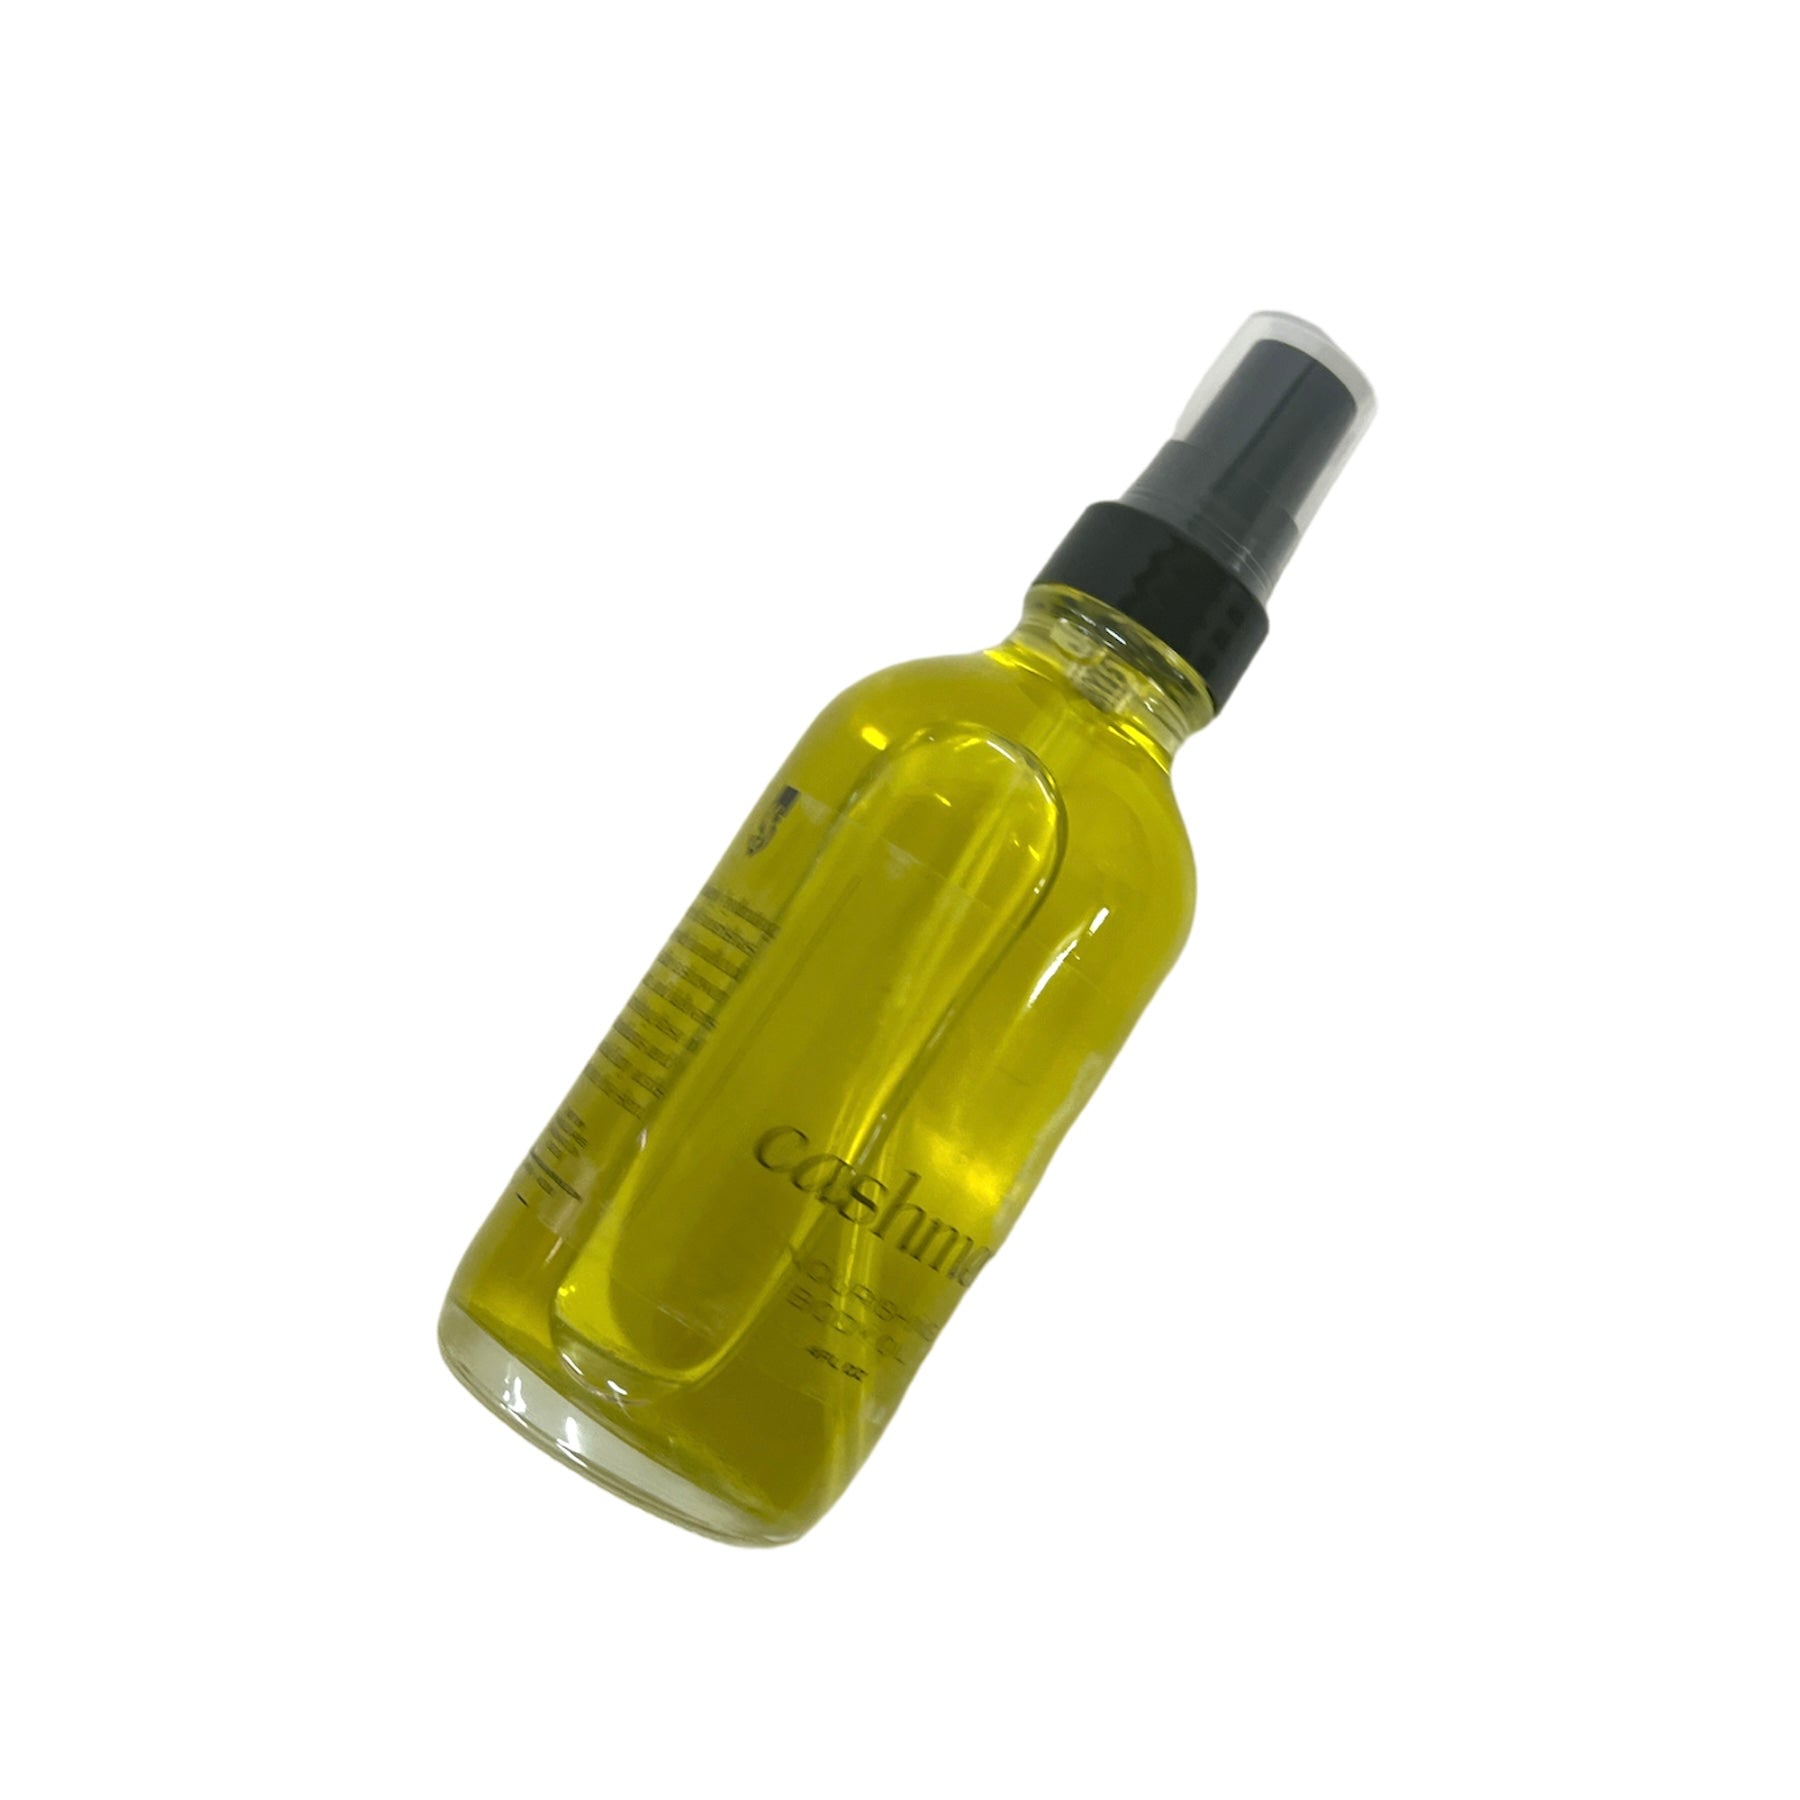 Vert Body Oil